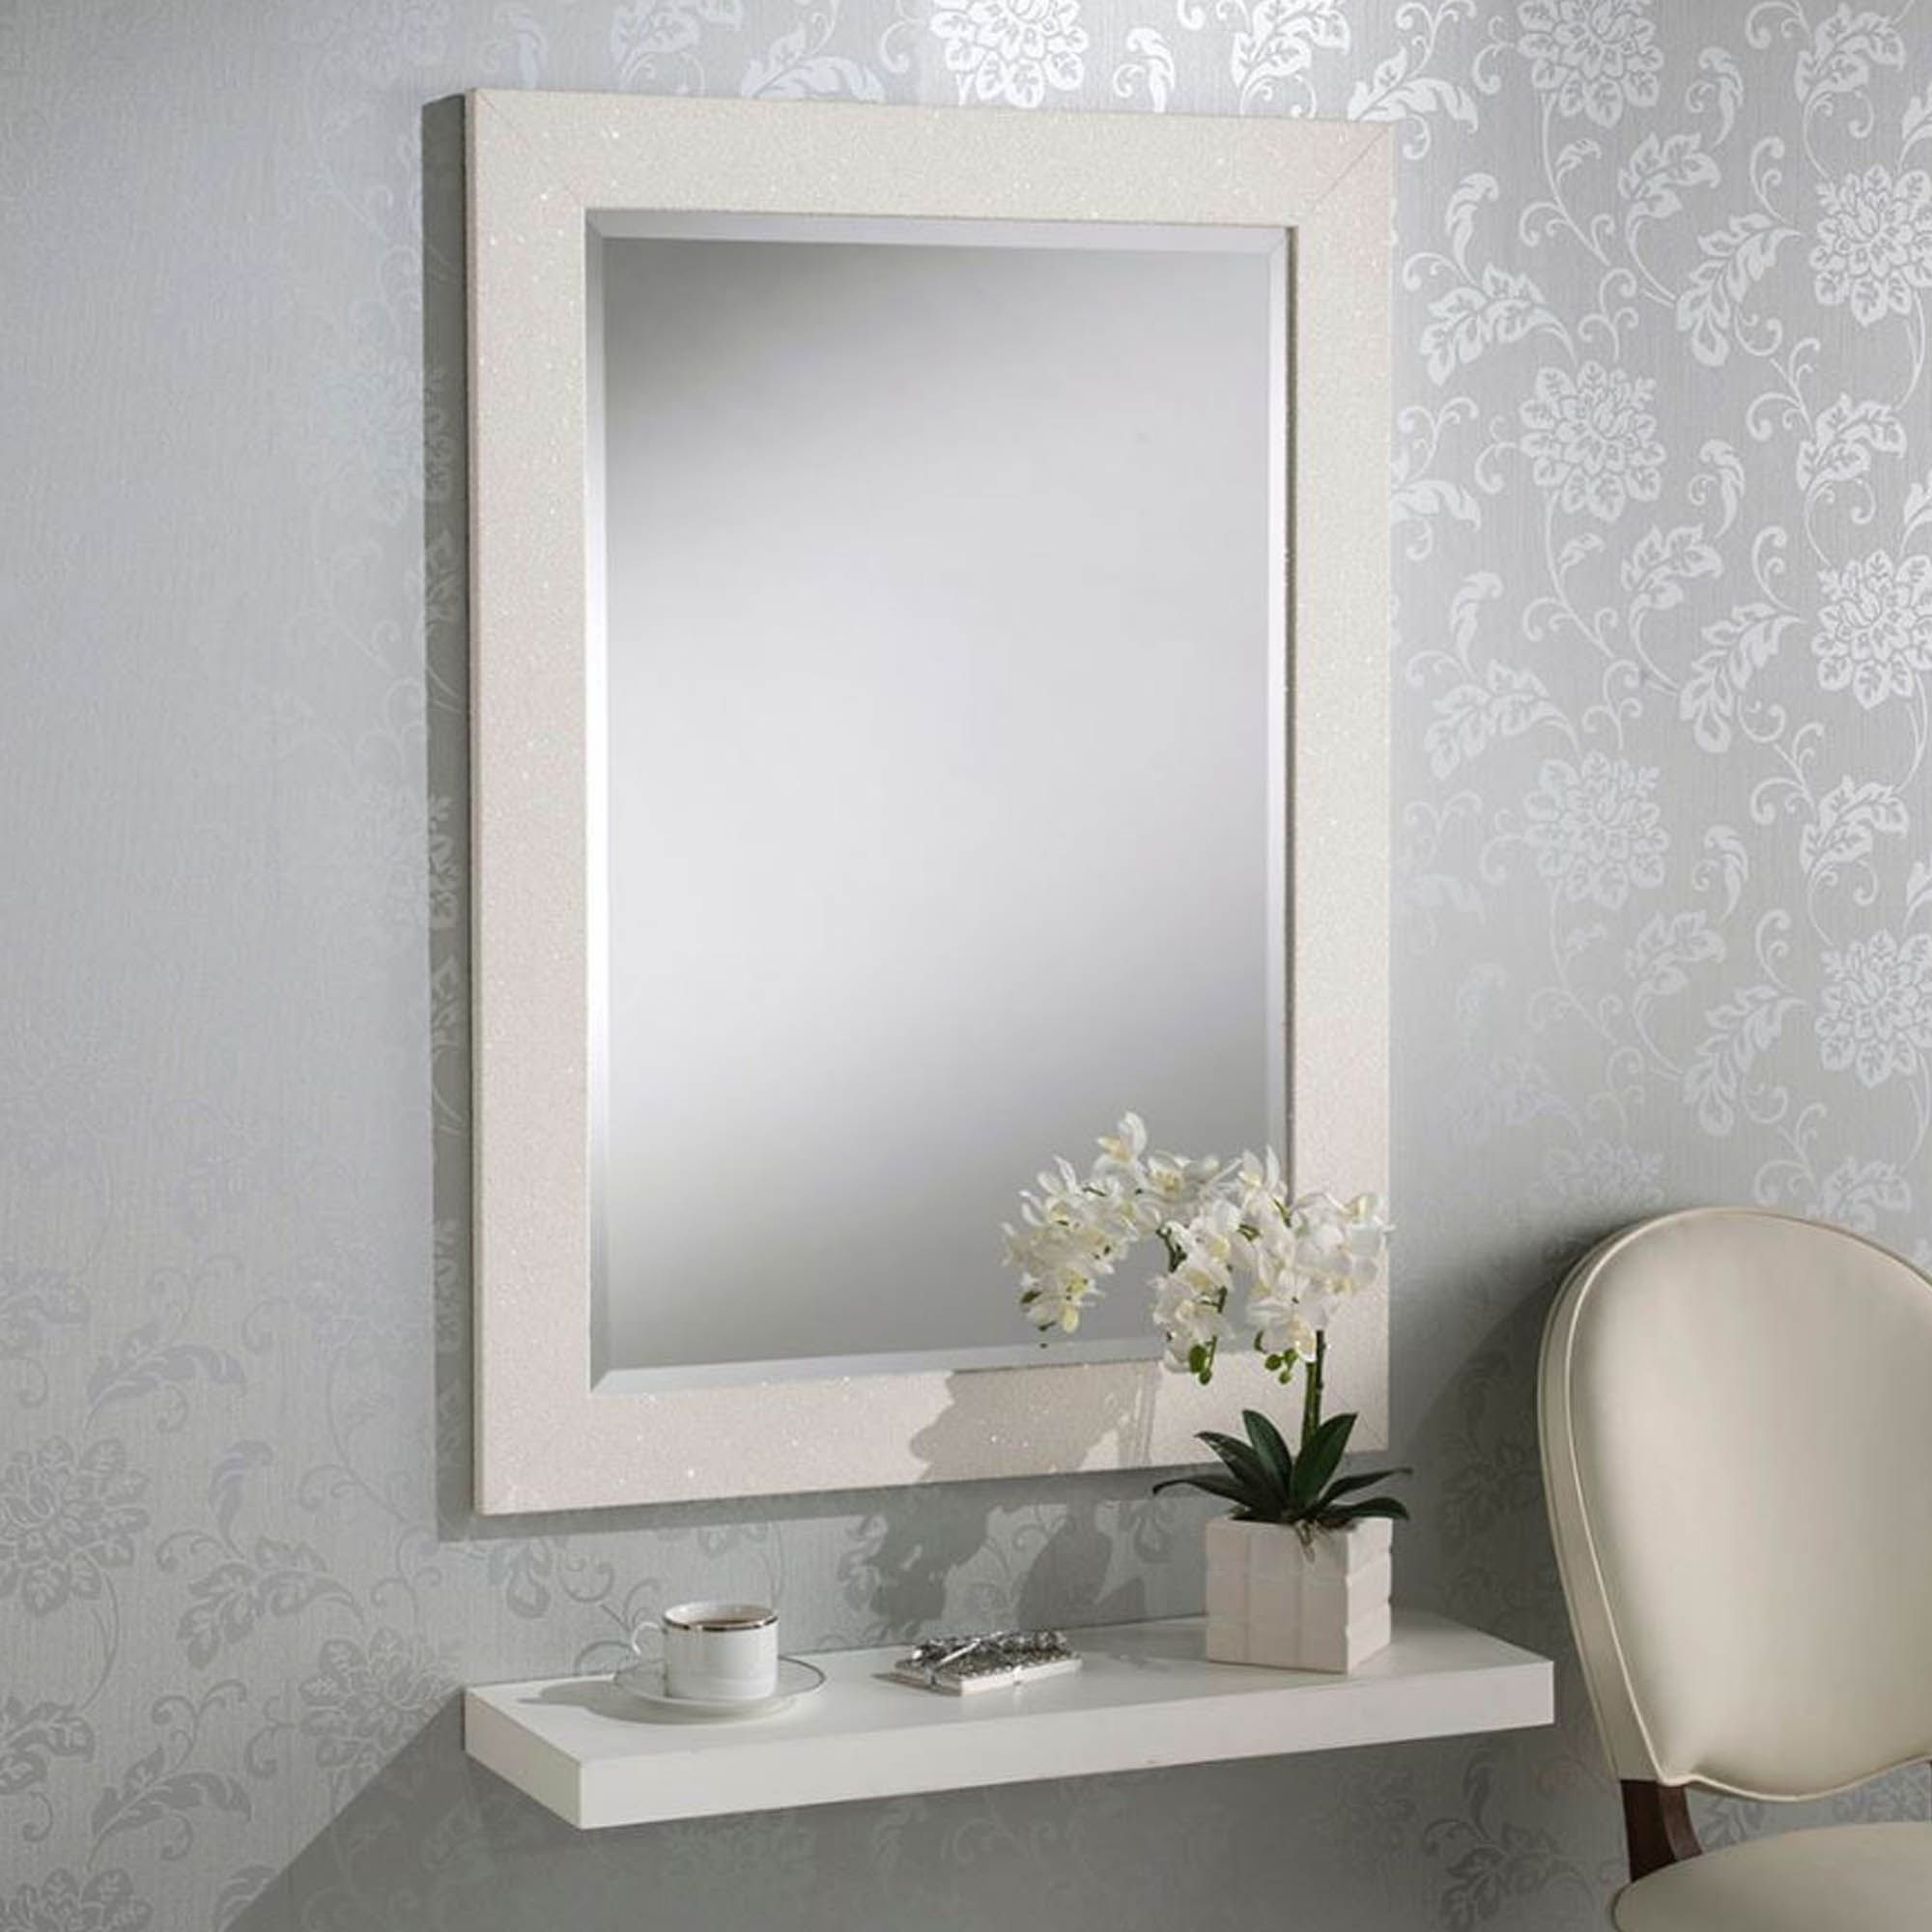 White Glitter Rectangular Wall Mirror | Homesdirect365 For Squared Corner Rectangular Wall Mirrors (View 2 of 15)